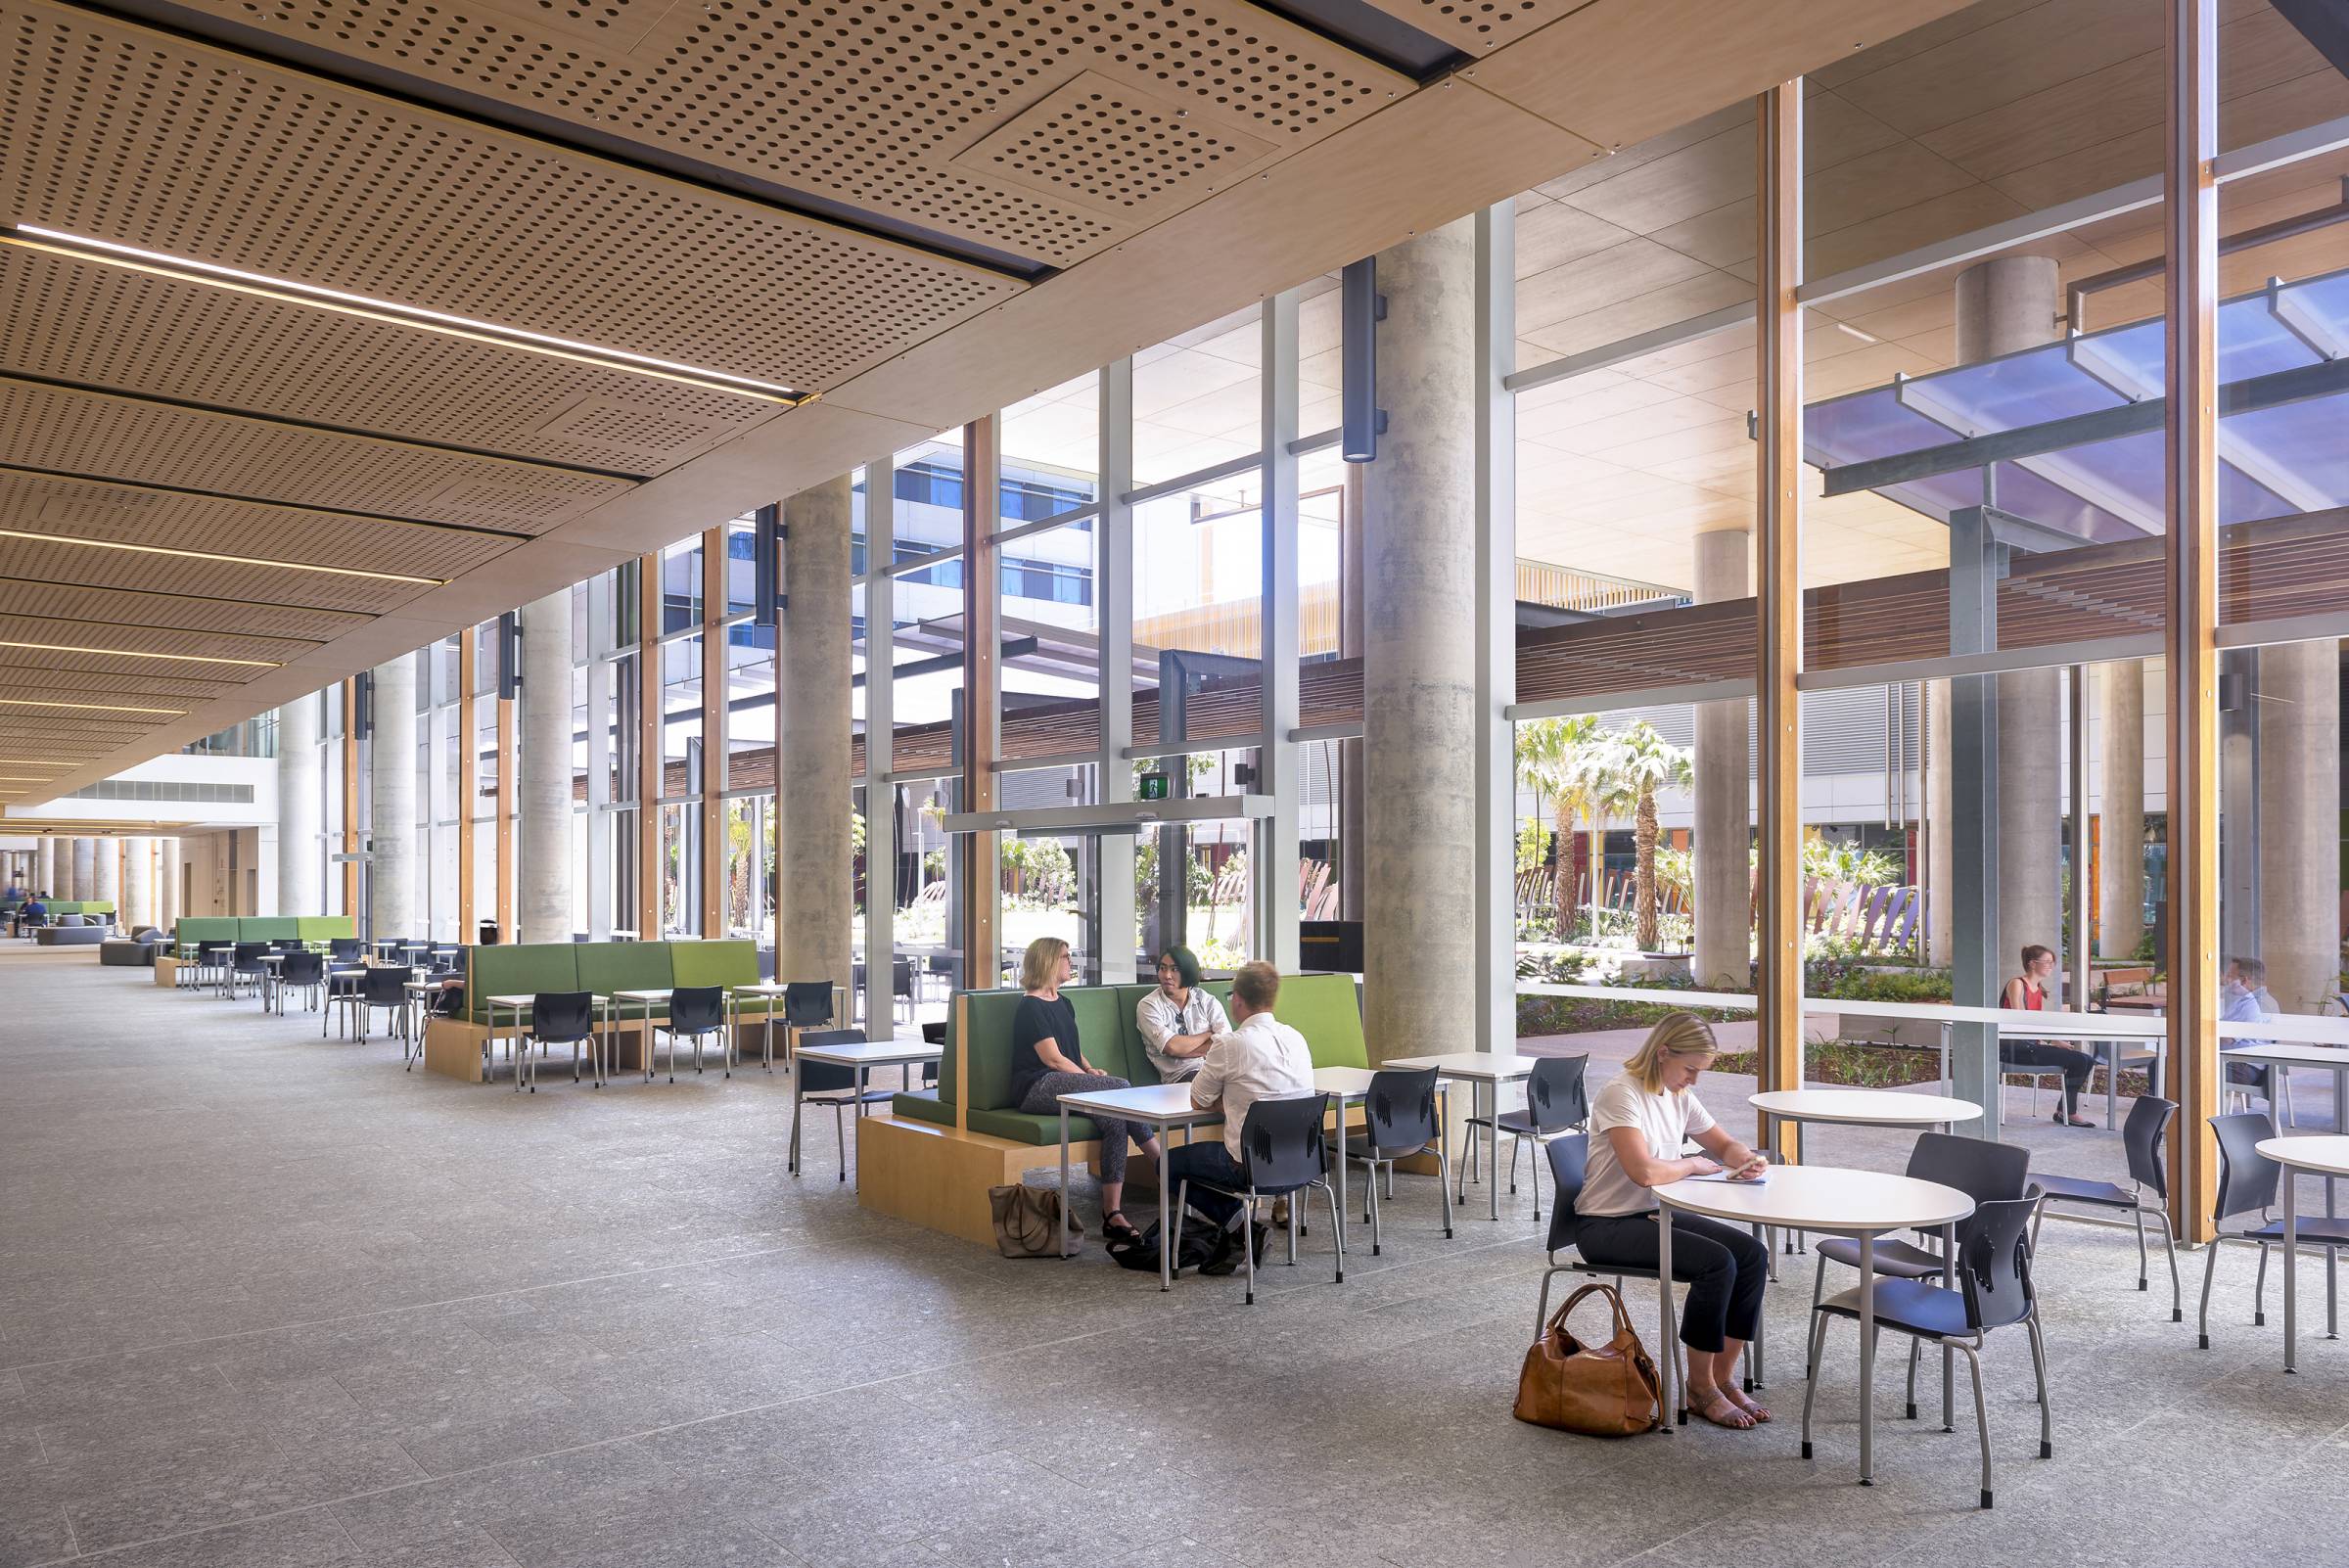 Interior architecture - Sunshine Coast University Hospital